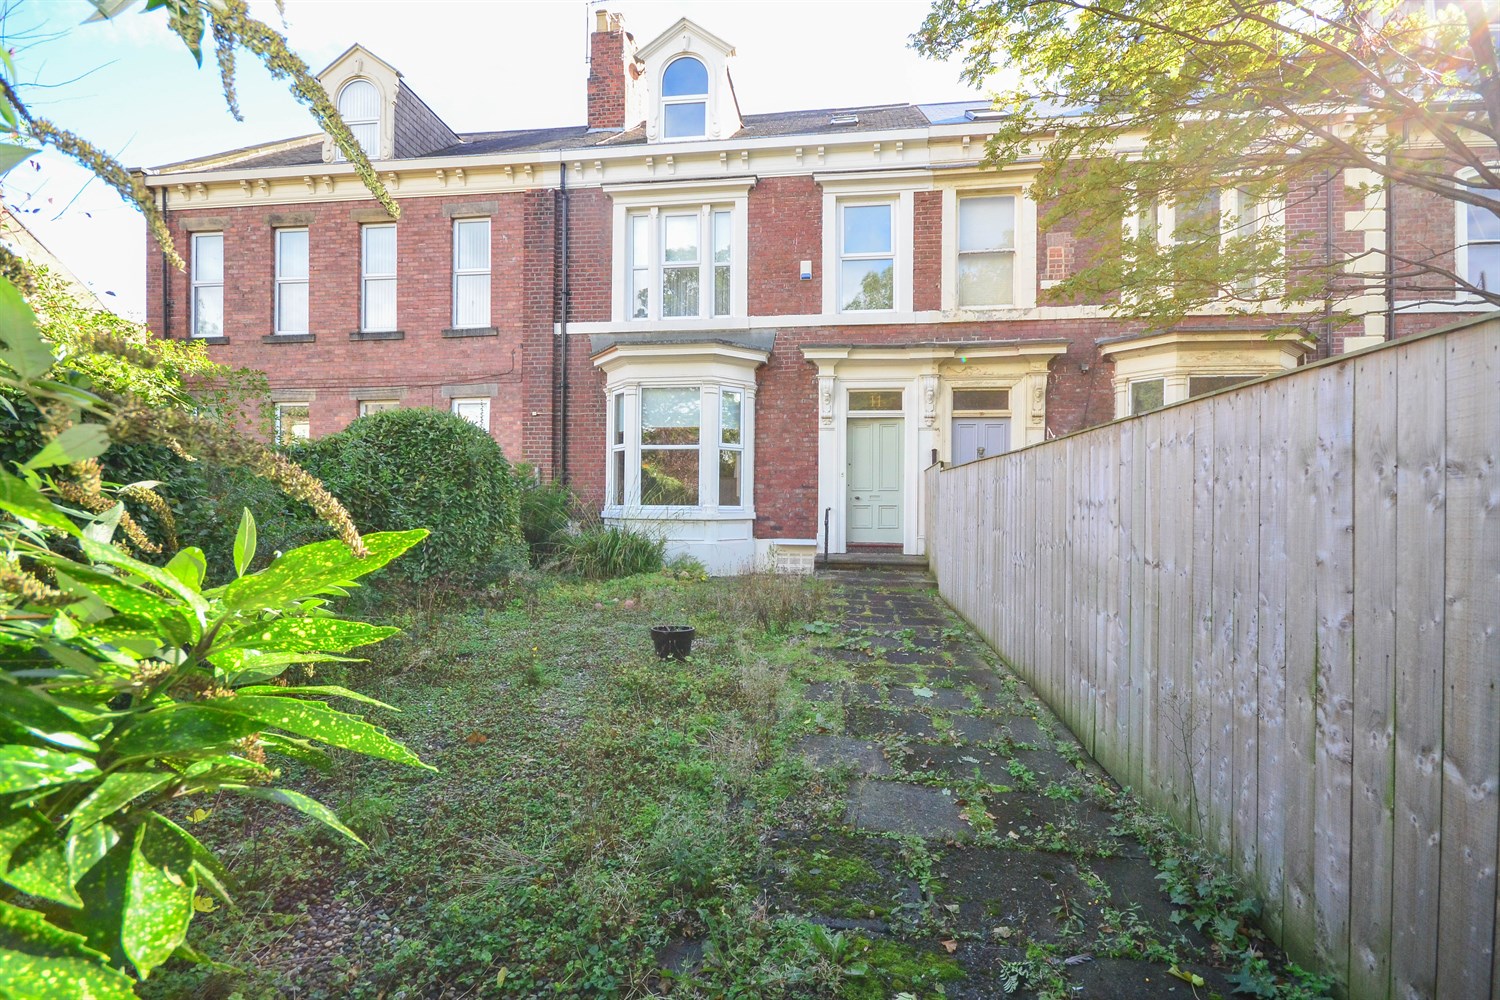 6 bed house for sale in Ashbrooke, Sunderland - Property Image 1